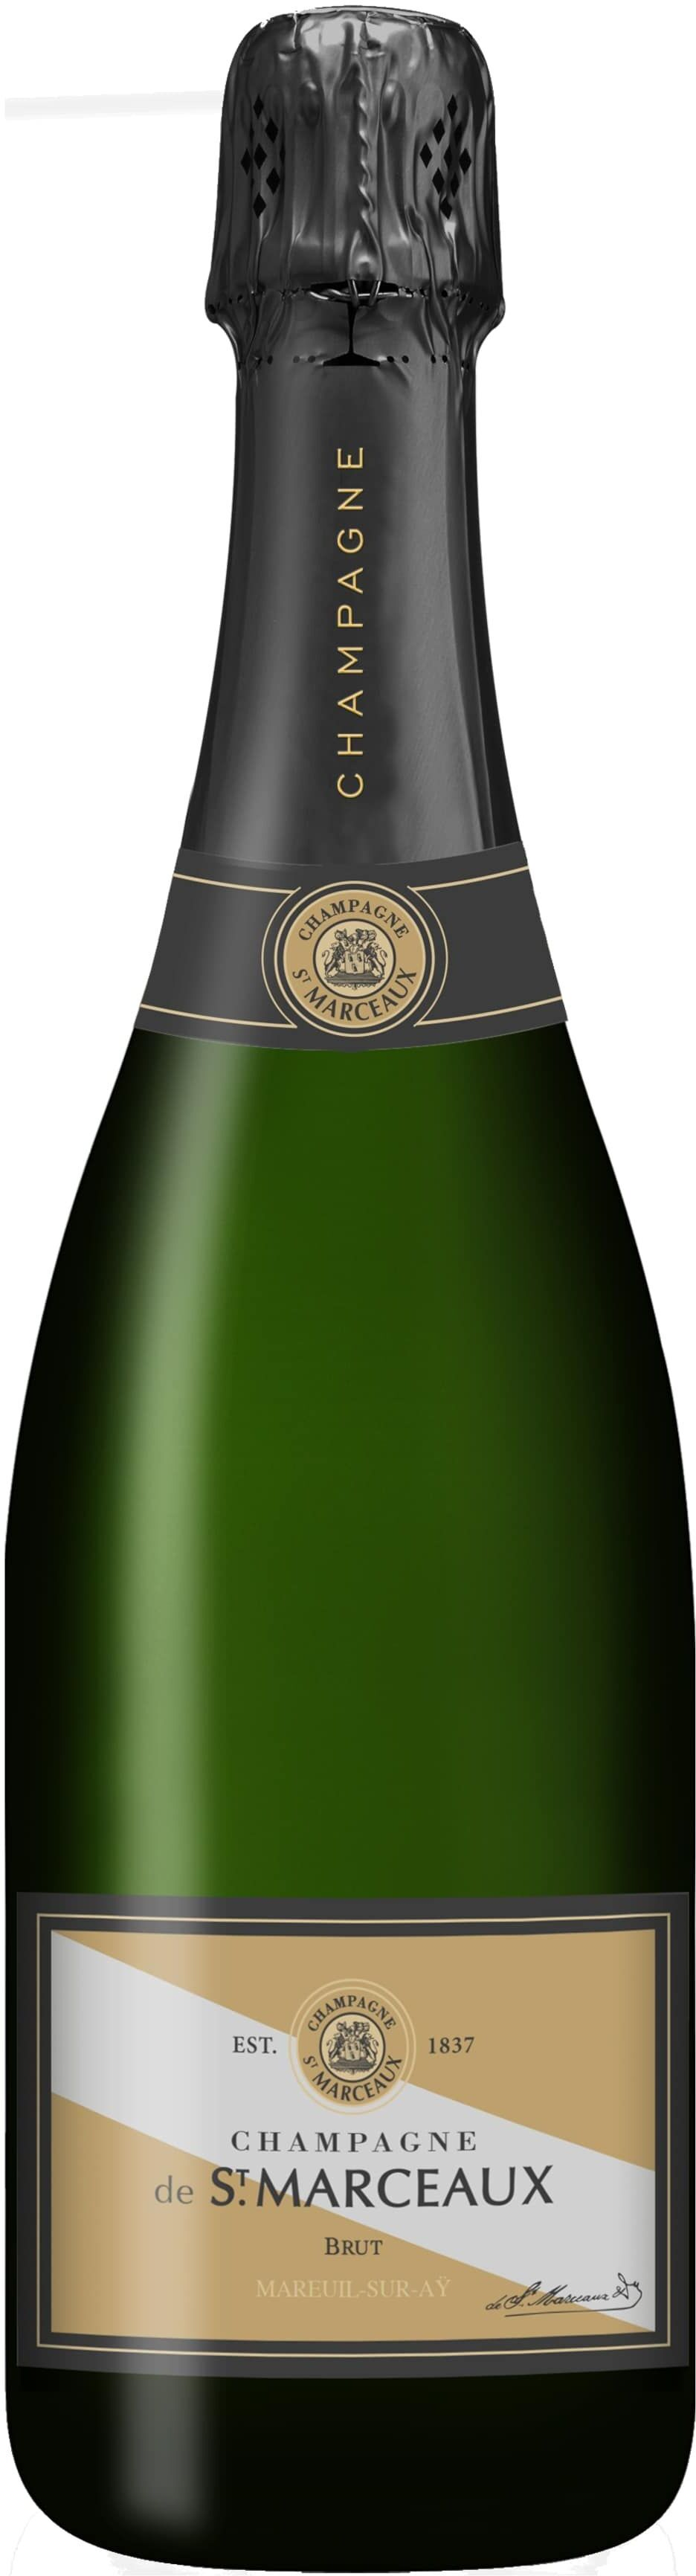 Philipponnat Champagne aoc Brut 'De Saint Marceaux'